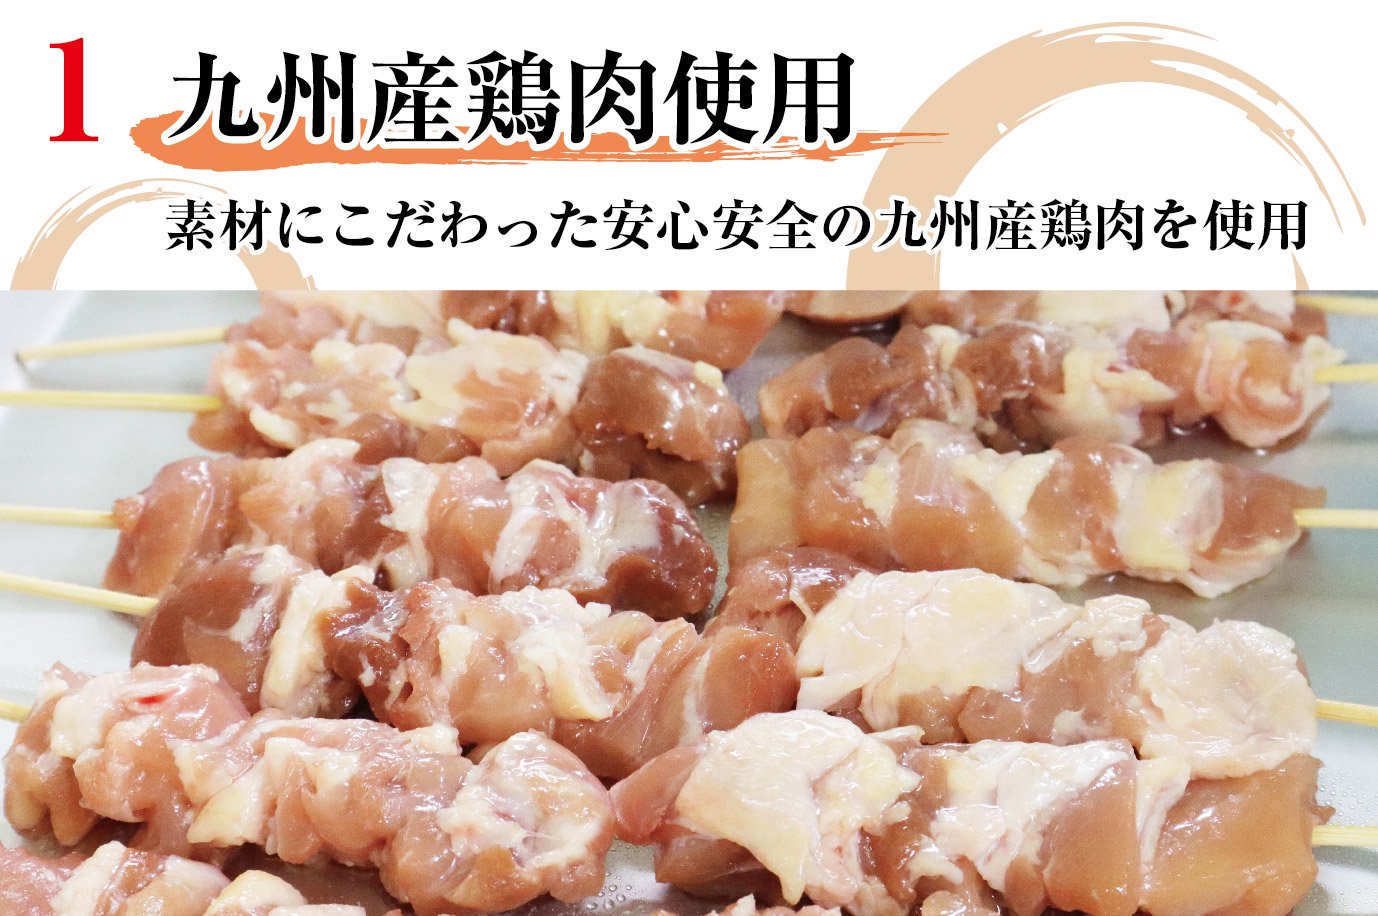 1.九州産鶏肉使用 素材にこだわった安心安全の九州産鶏肉を使用